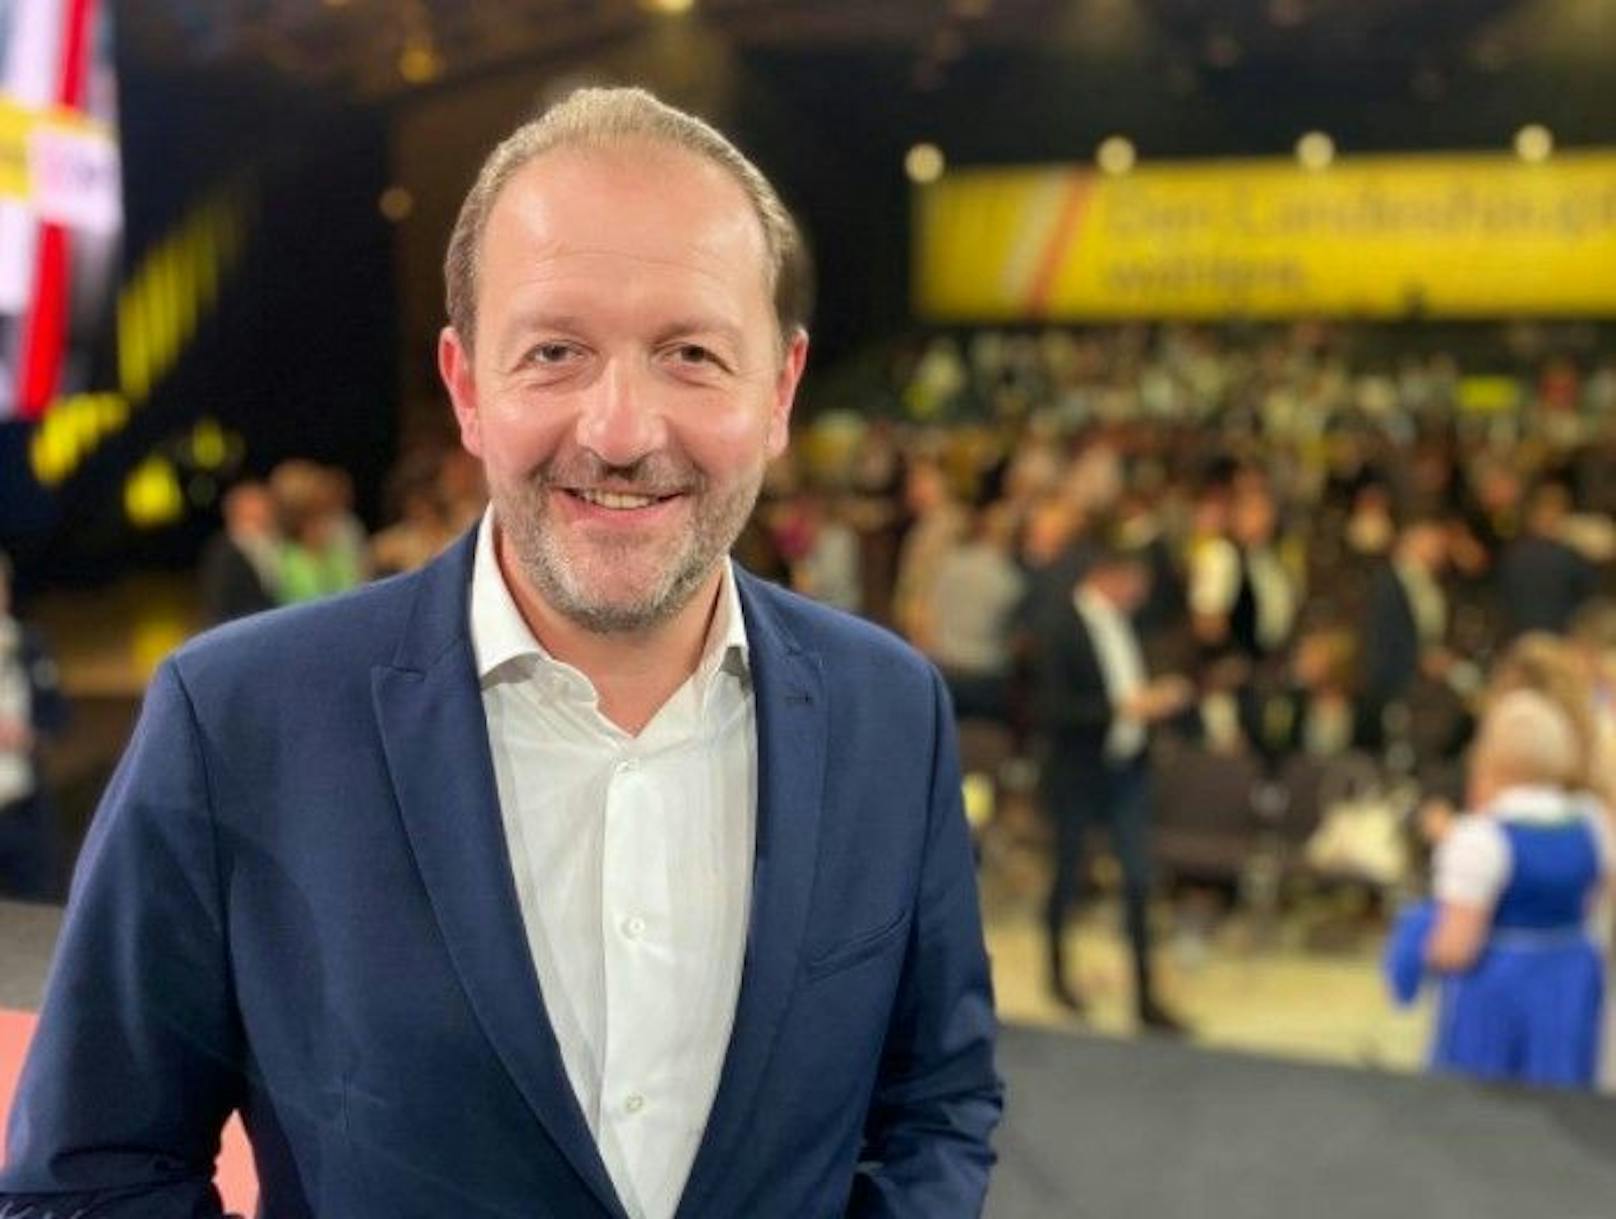 ÖVP-Kandidat Bernhard Baier unterlag im Duell mit Klaus Luger klar. Er glaubt, dass der Chat-Skandal einen Einfluss auf die Wahl hatte.